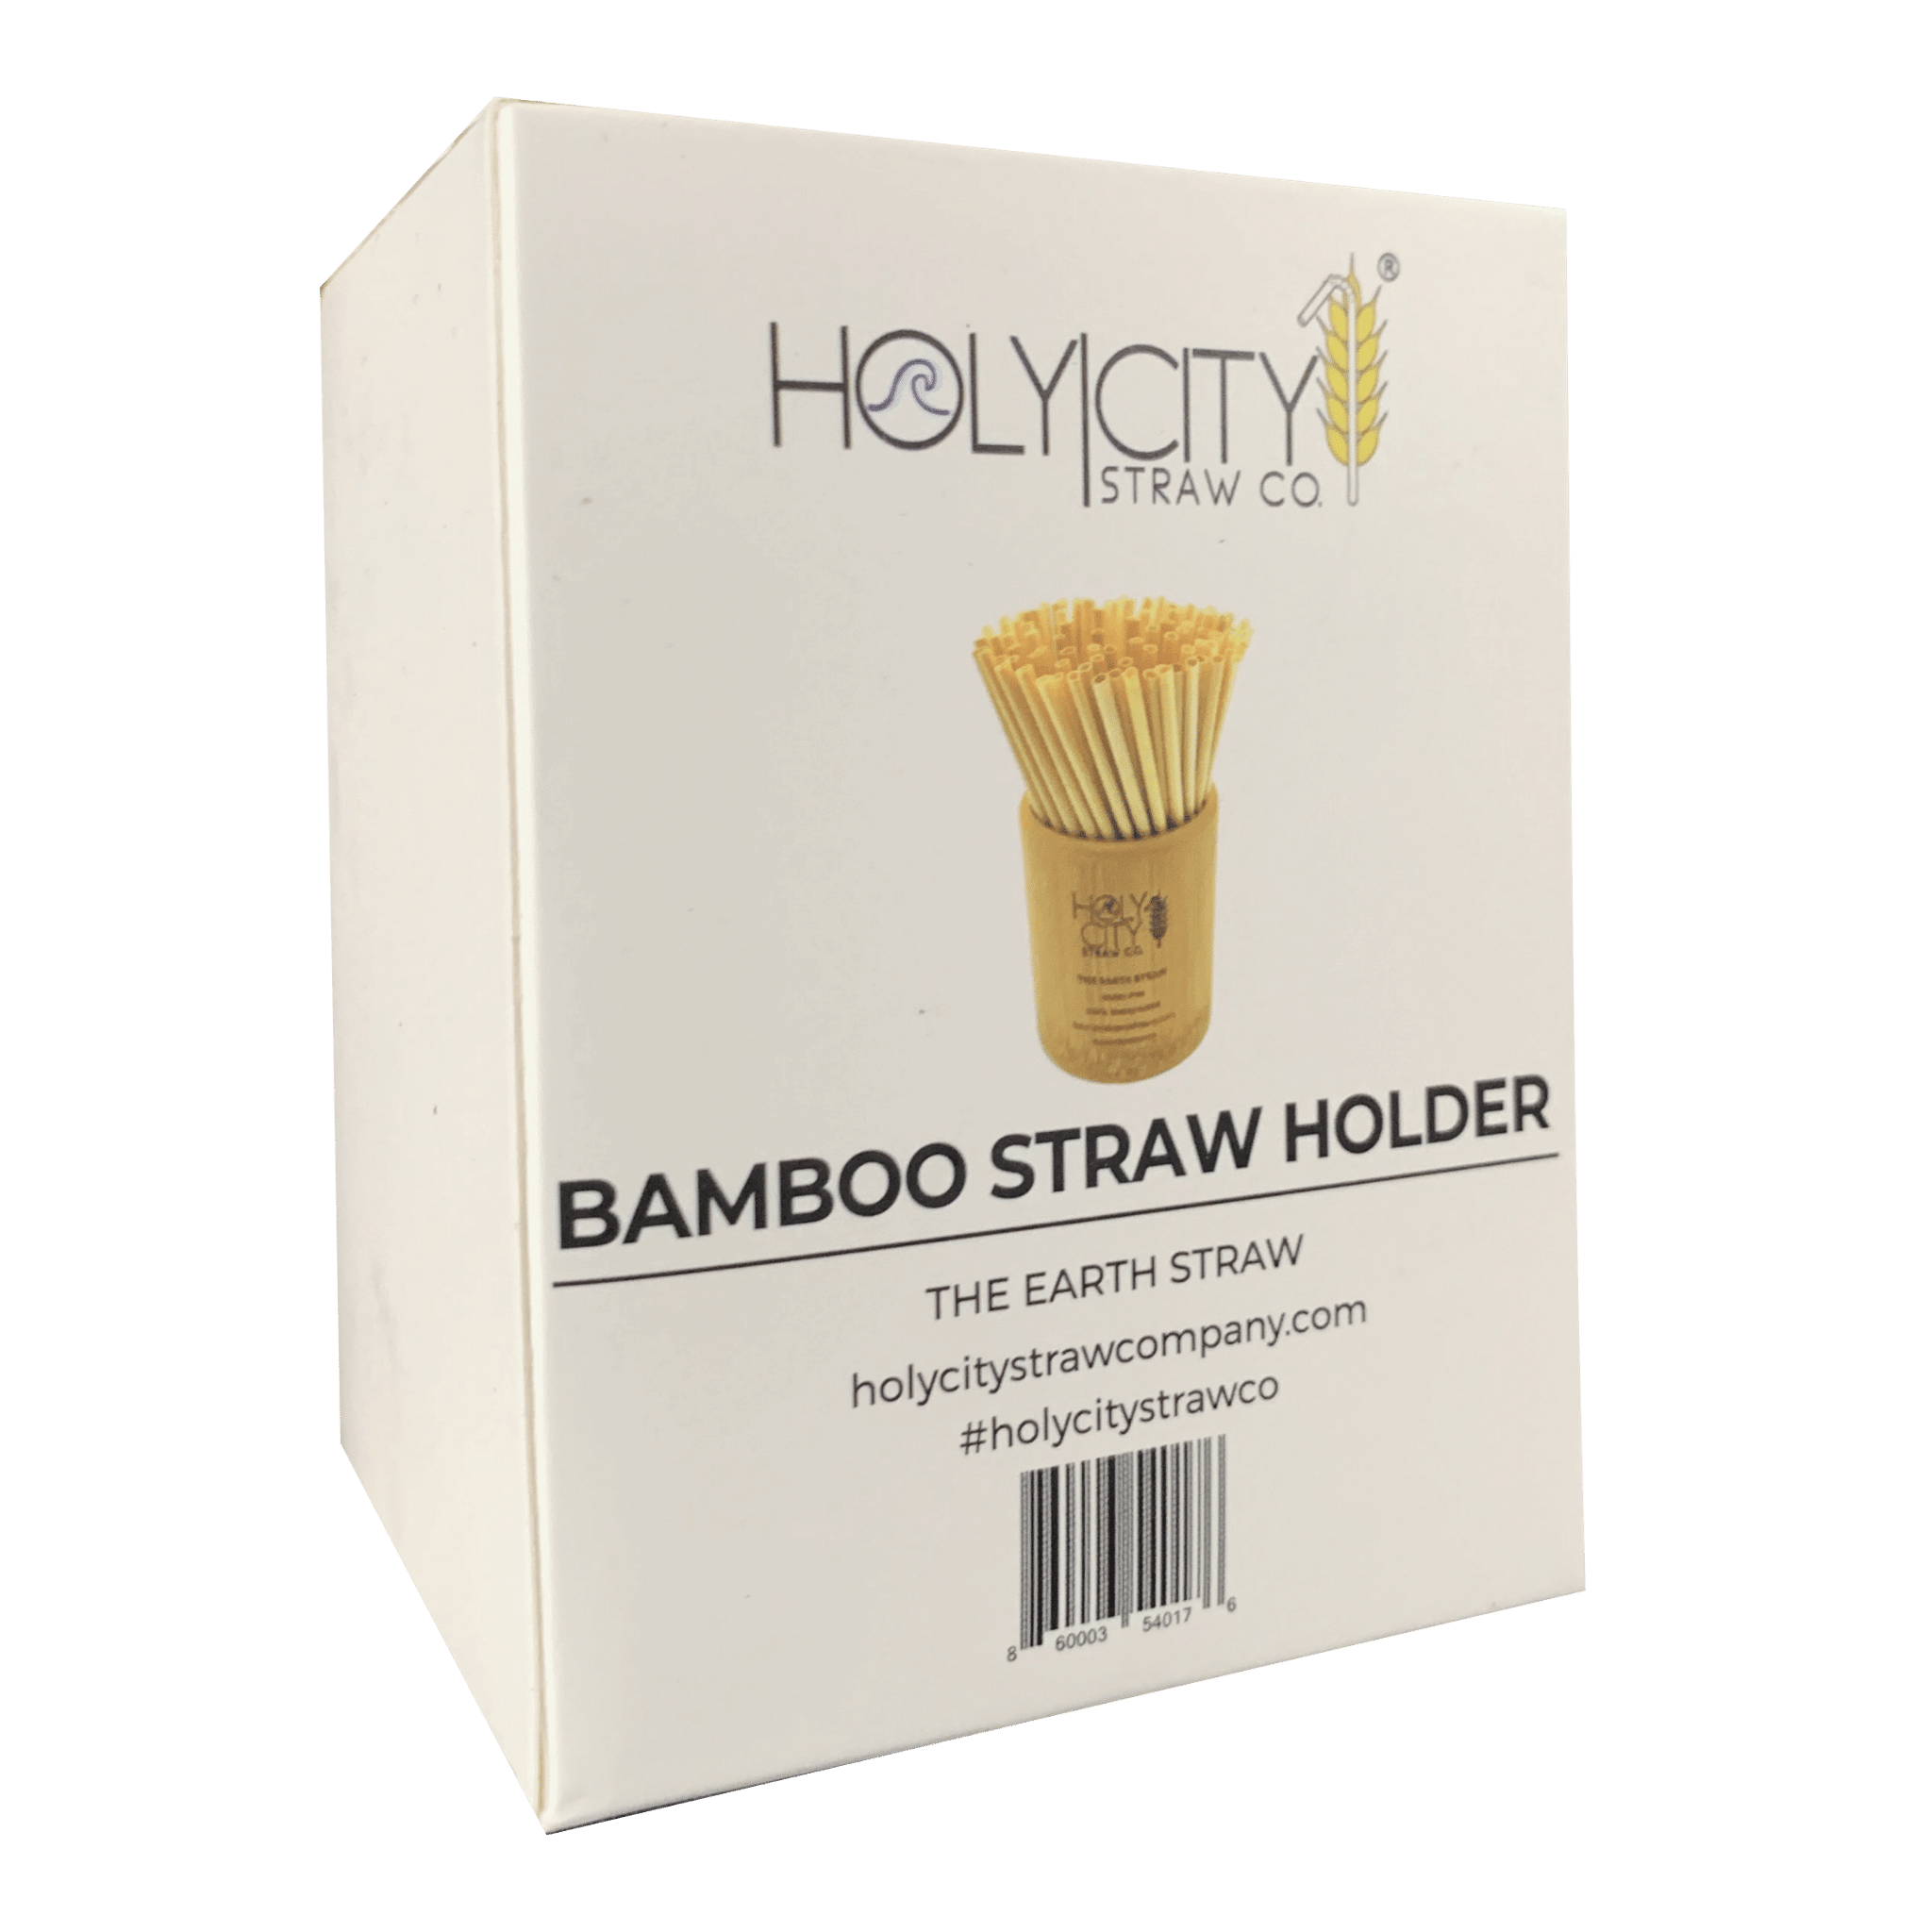 Holy City Straw Company Branded small Bamboo Straw Holder Box